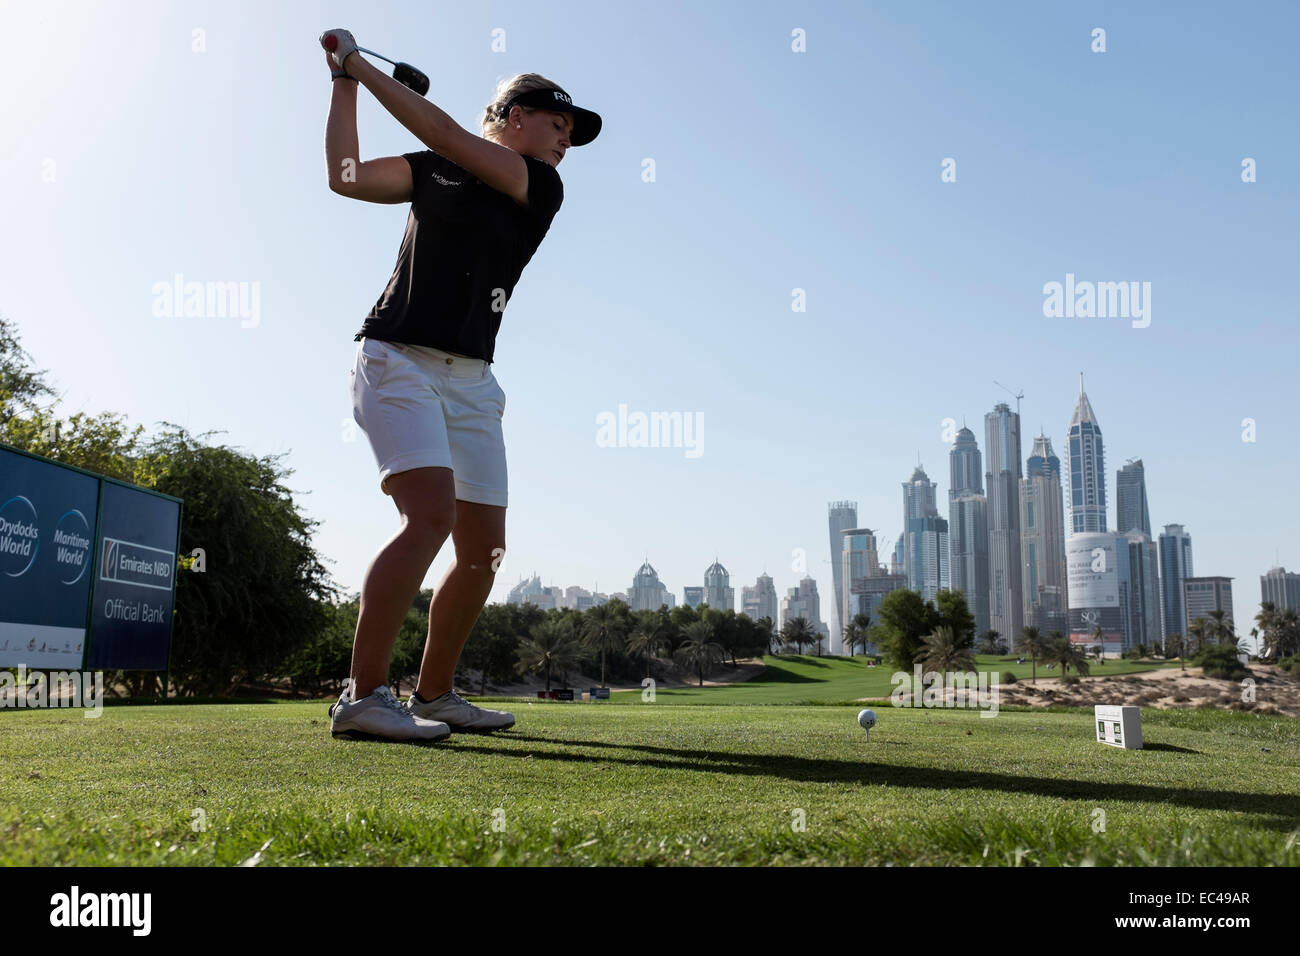 Dubaï, Émirats arabes unis. 9 Décembre, 2014. Charley Hull d'Angleterre tees au large de 8e té en Club de golf Emirates durant la compétition Pro-Am avant l'Omega Dubai Ladies Masters Golf Tournament à Dubaï Émirats Arabes Unis Crédit : Iain Masterton/Alamy Live News Banque D'Images